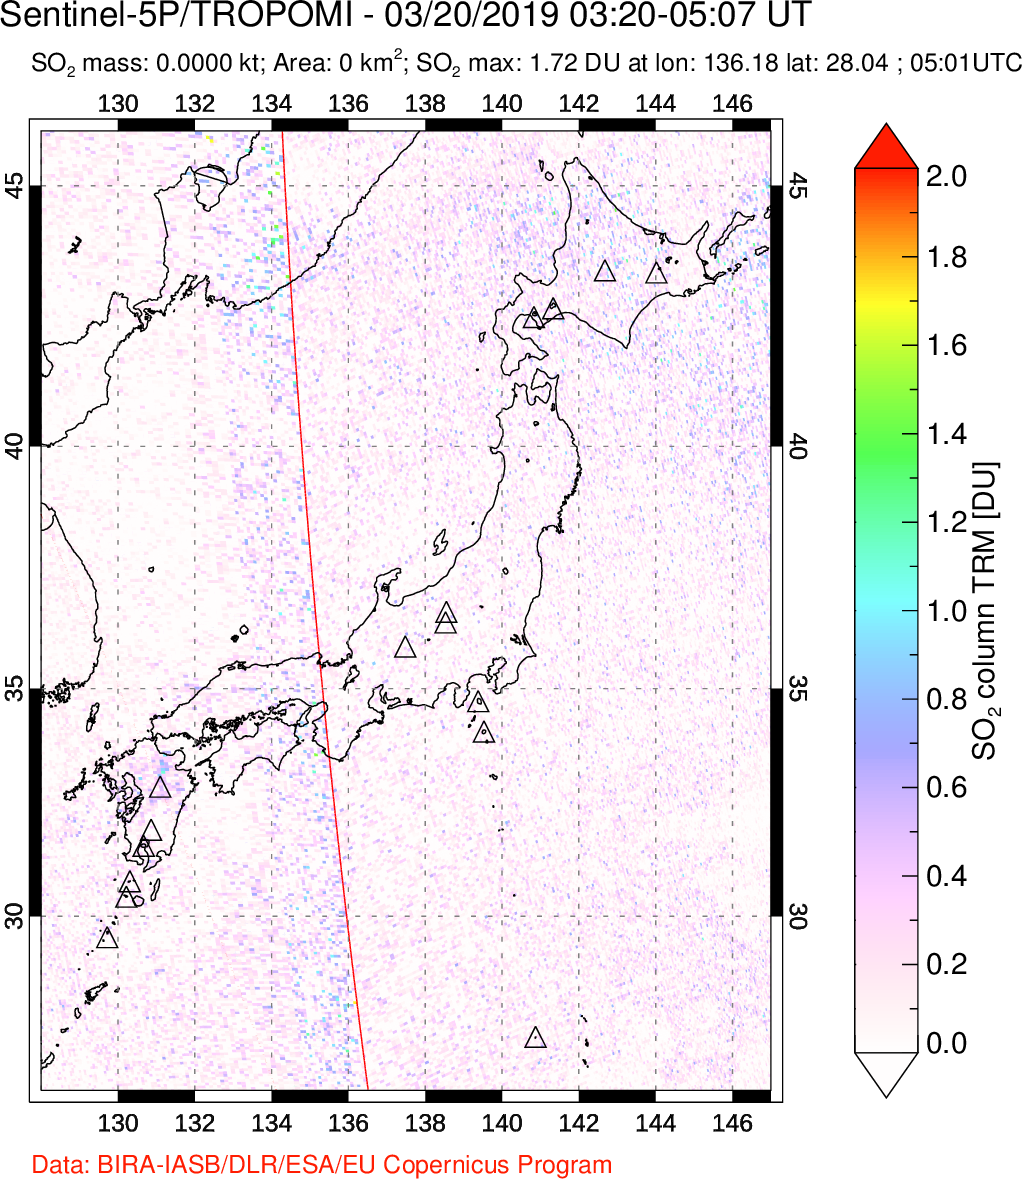 A sulfur dioxide image over Japan on Mar 20, 2019.